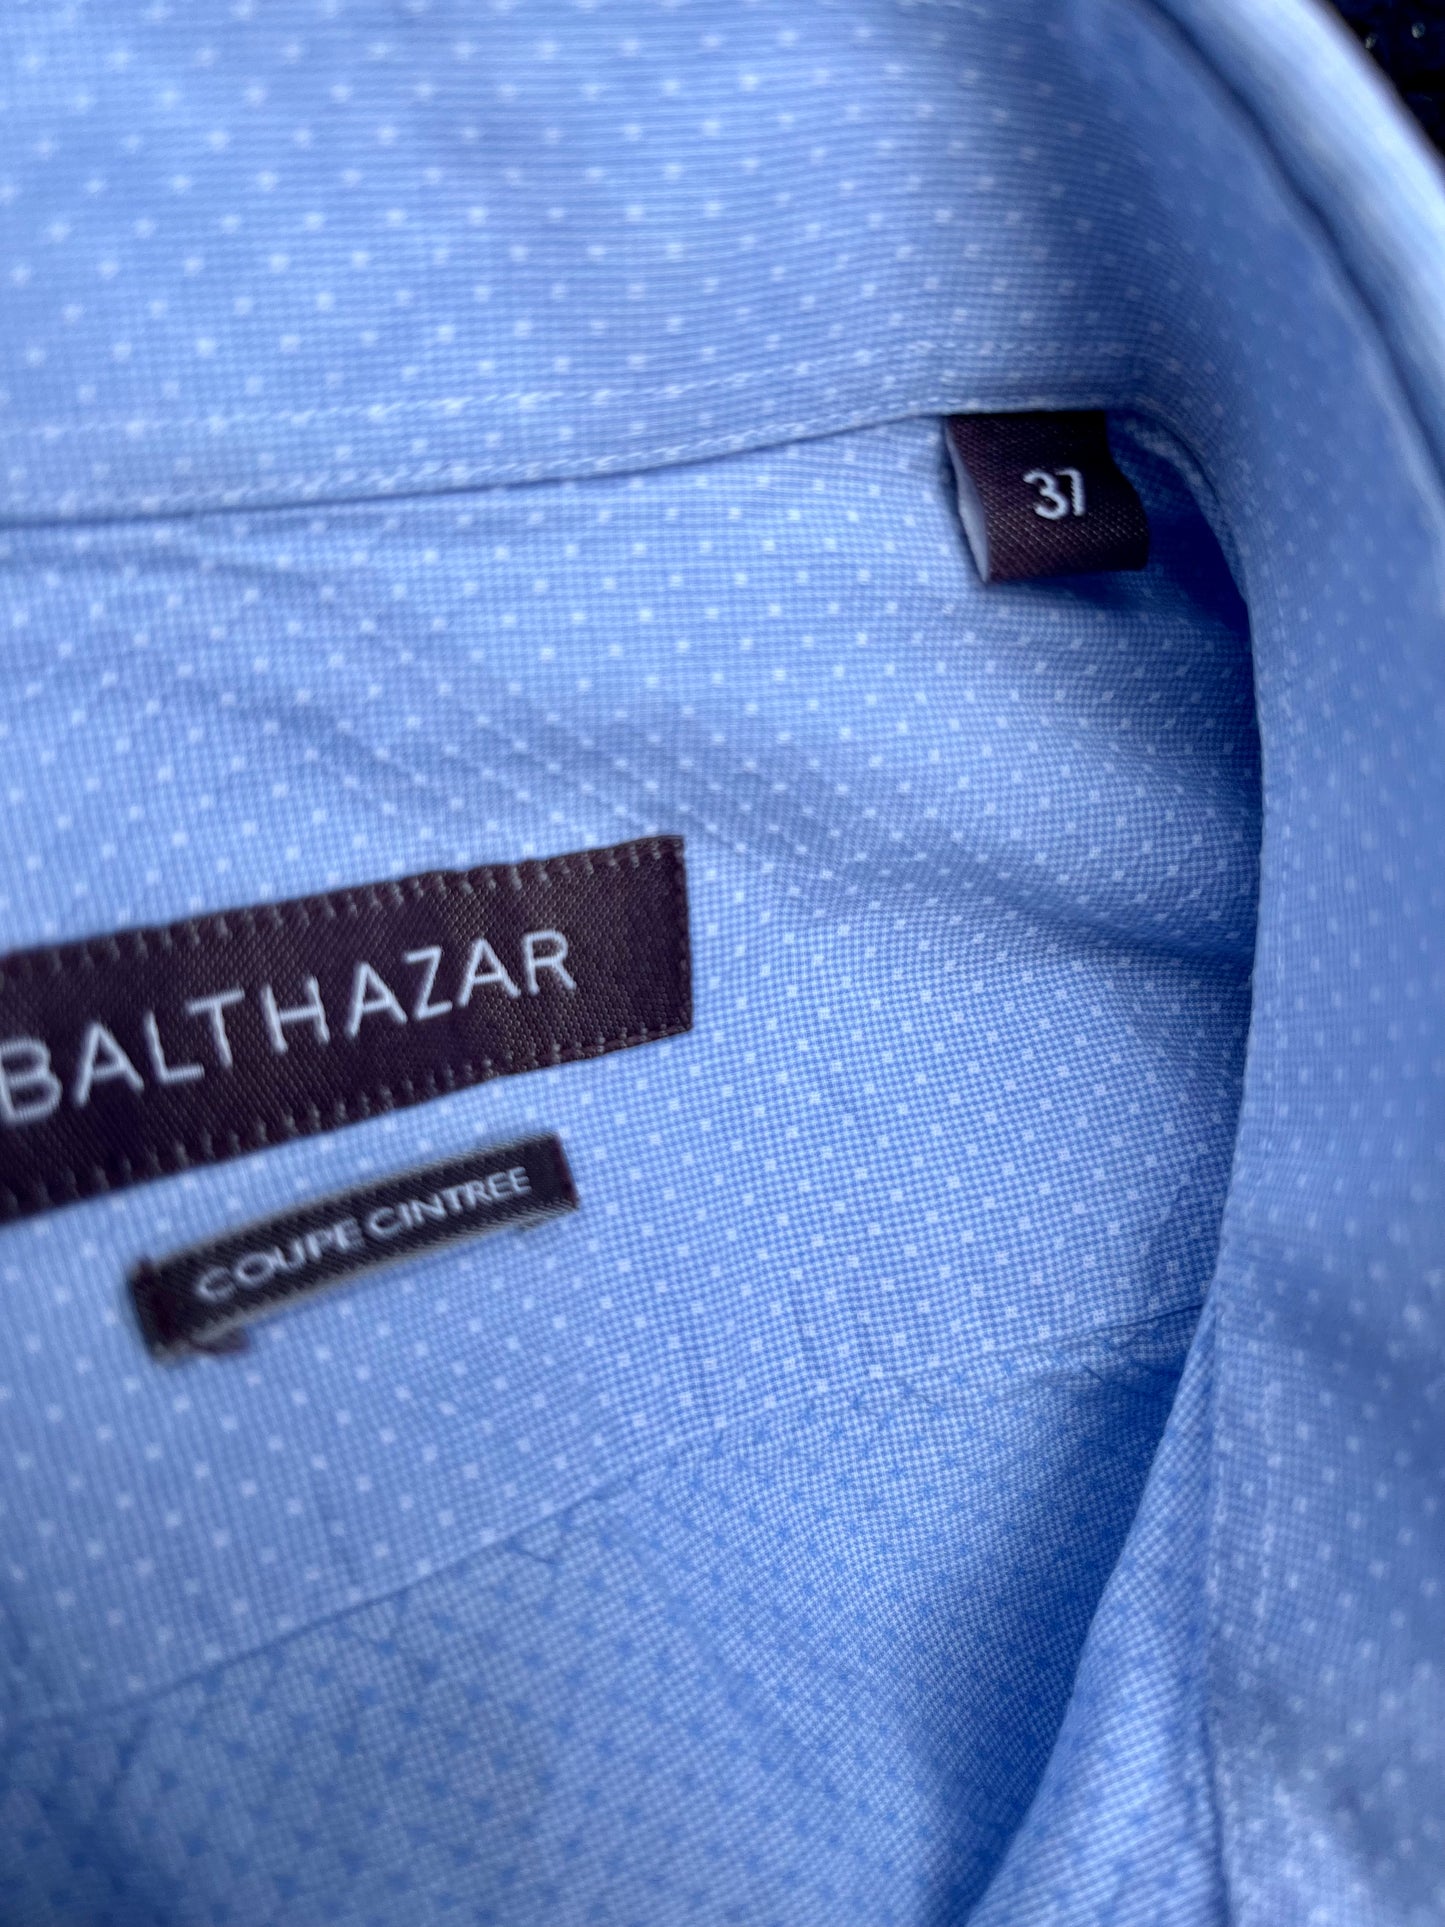 La chemise bleue à pois,  BALTHAZAR, taille S